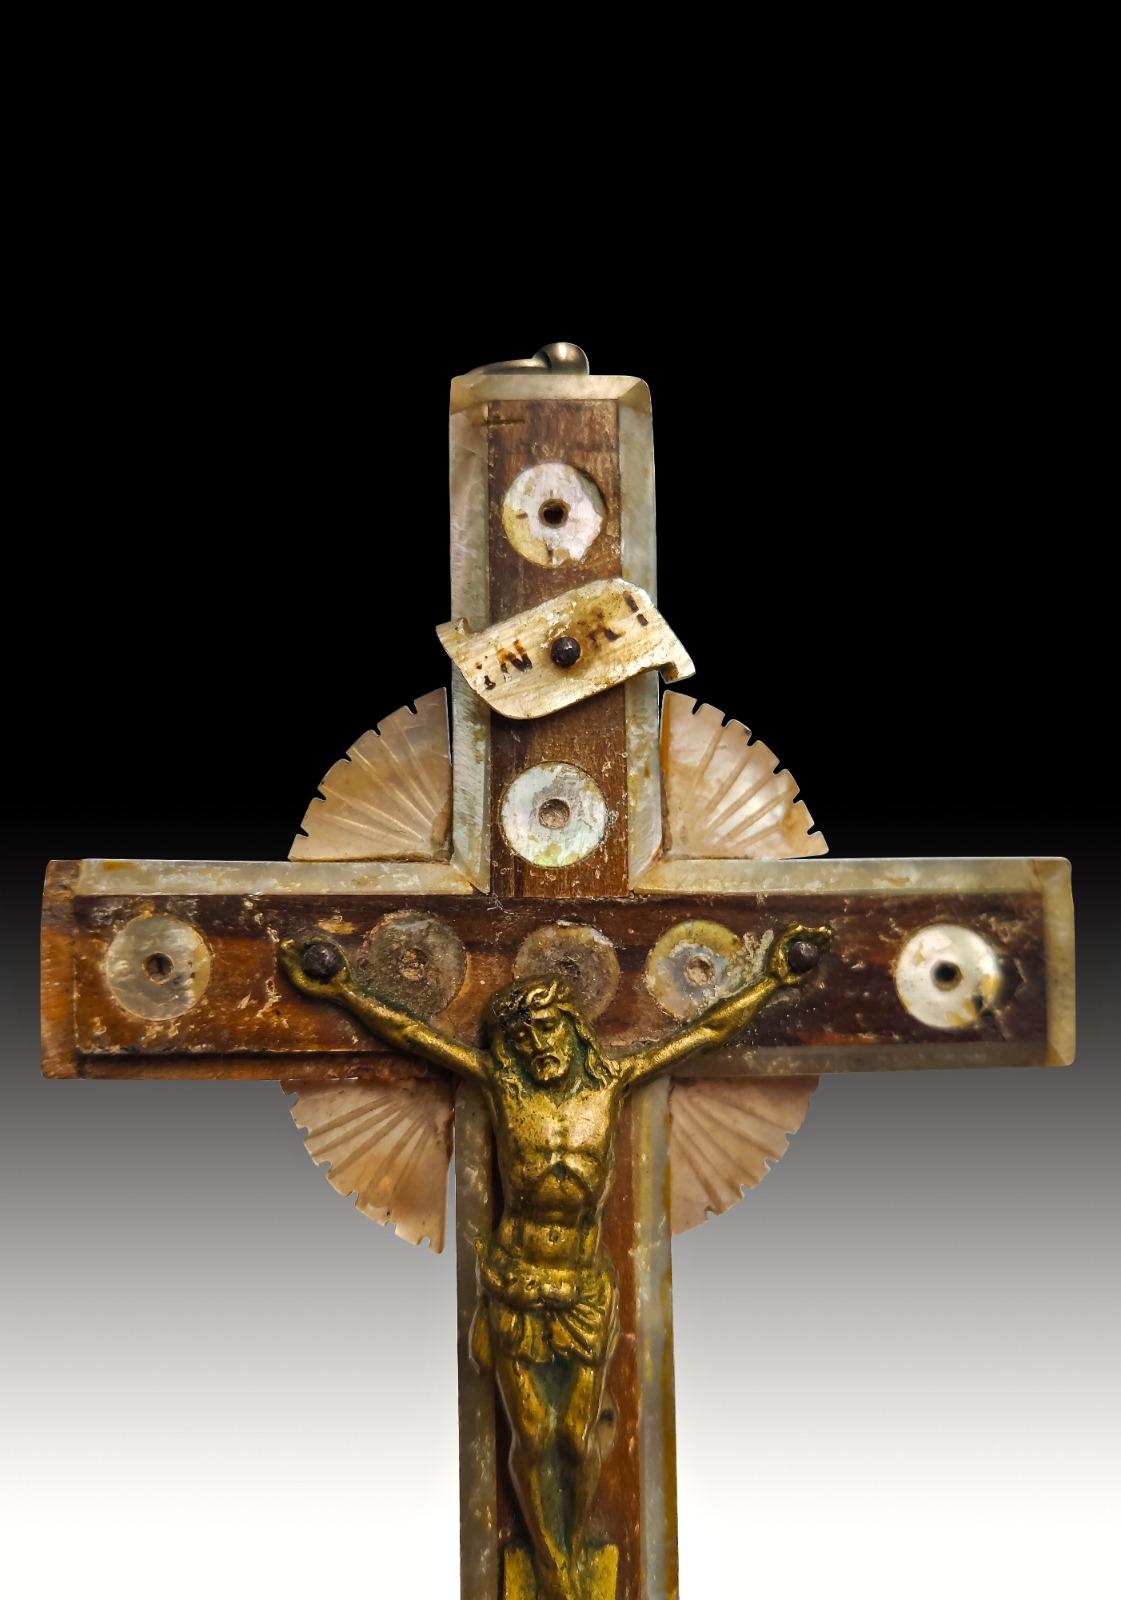 Croix de Jérusalem 19e siècle.
Croix de Jérusalem du XIXe siècle Croix de Jérusalem ancienne du XIXe siècle en bois d'olivier et nacre. Mesures : 14x7 cm.